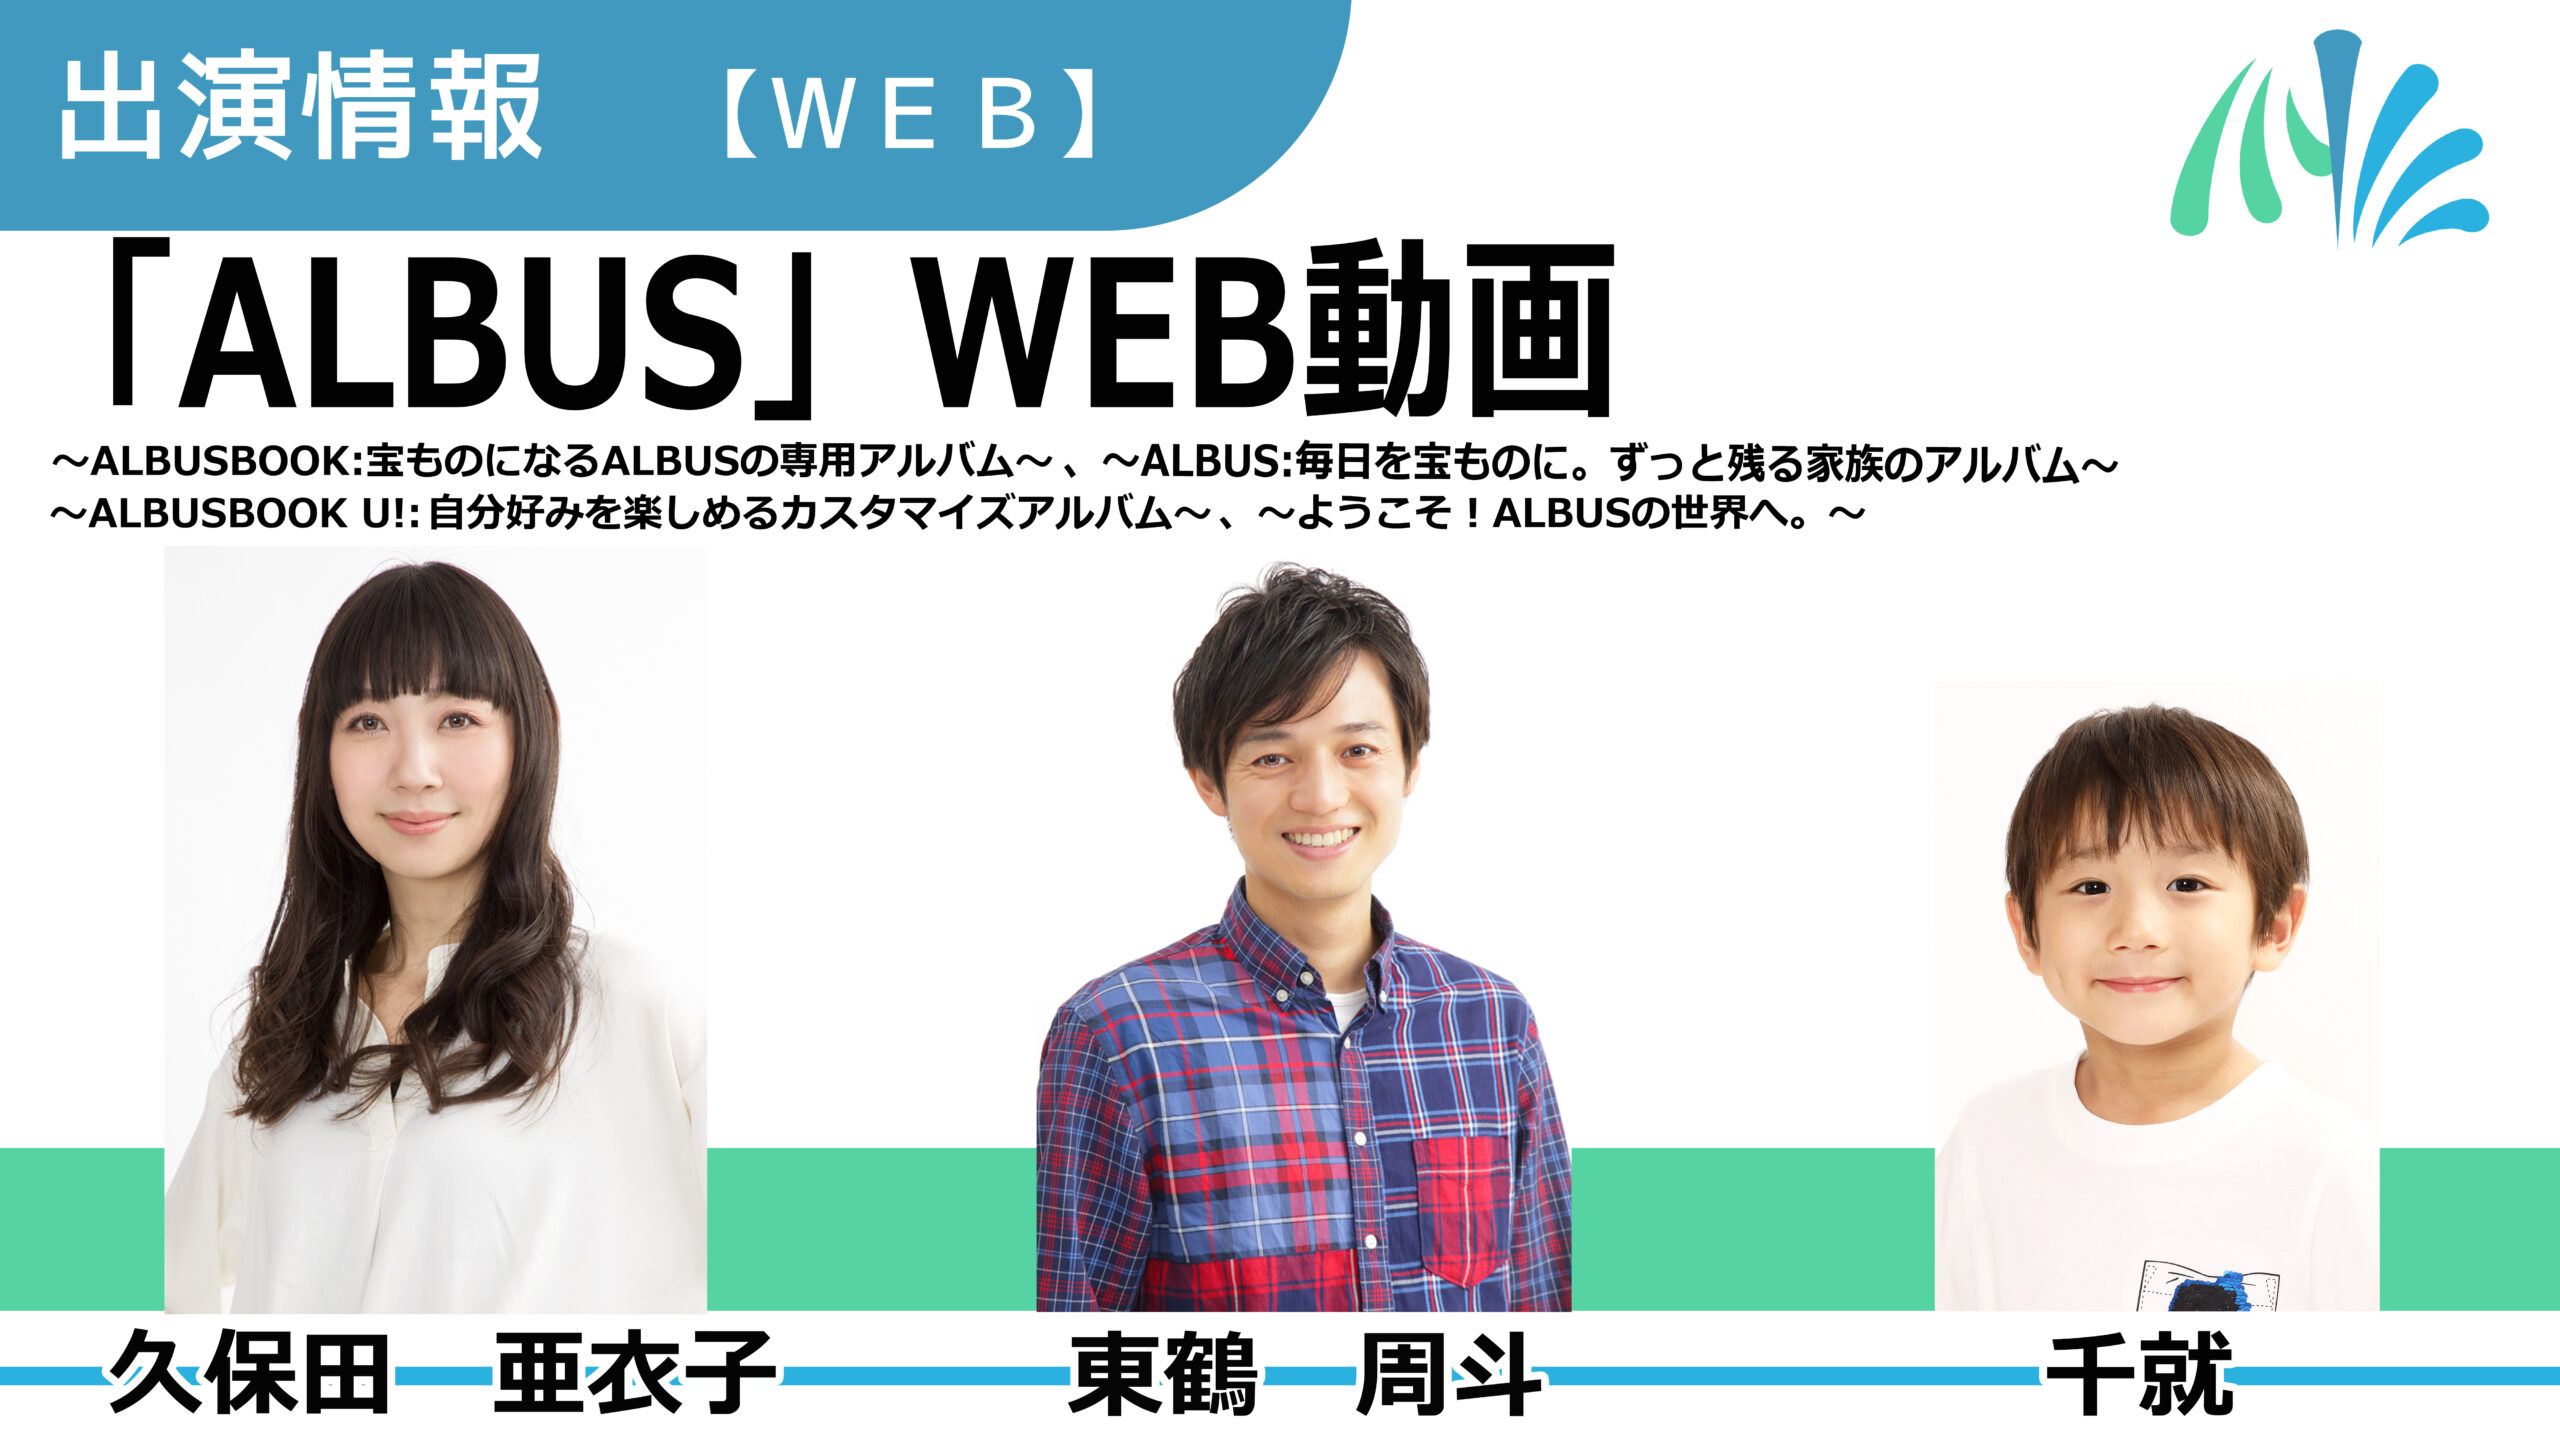 【出演情報】久保田亜衣子、東鶴周斗、千就 / 「ALBUS」WEB動画　出演